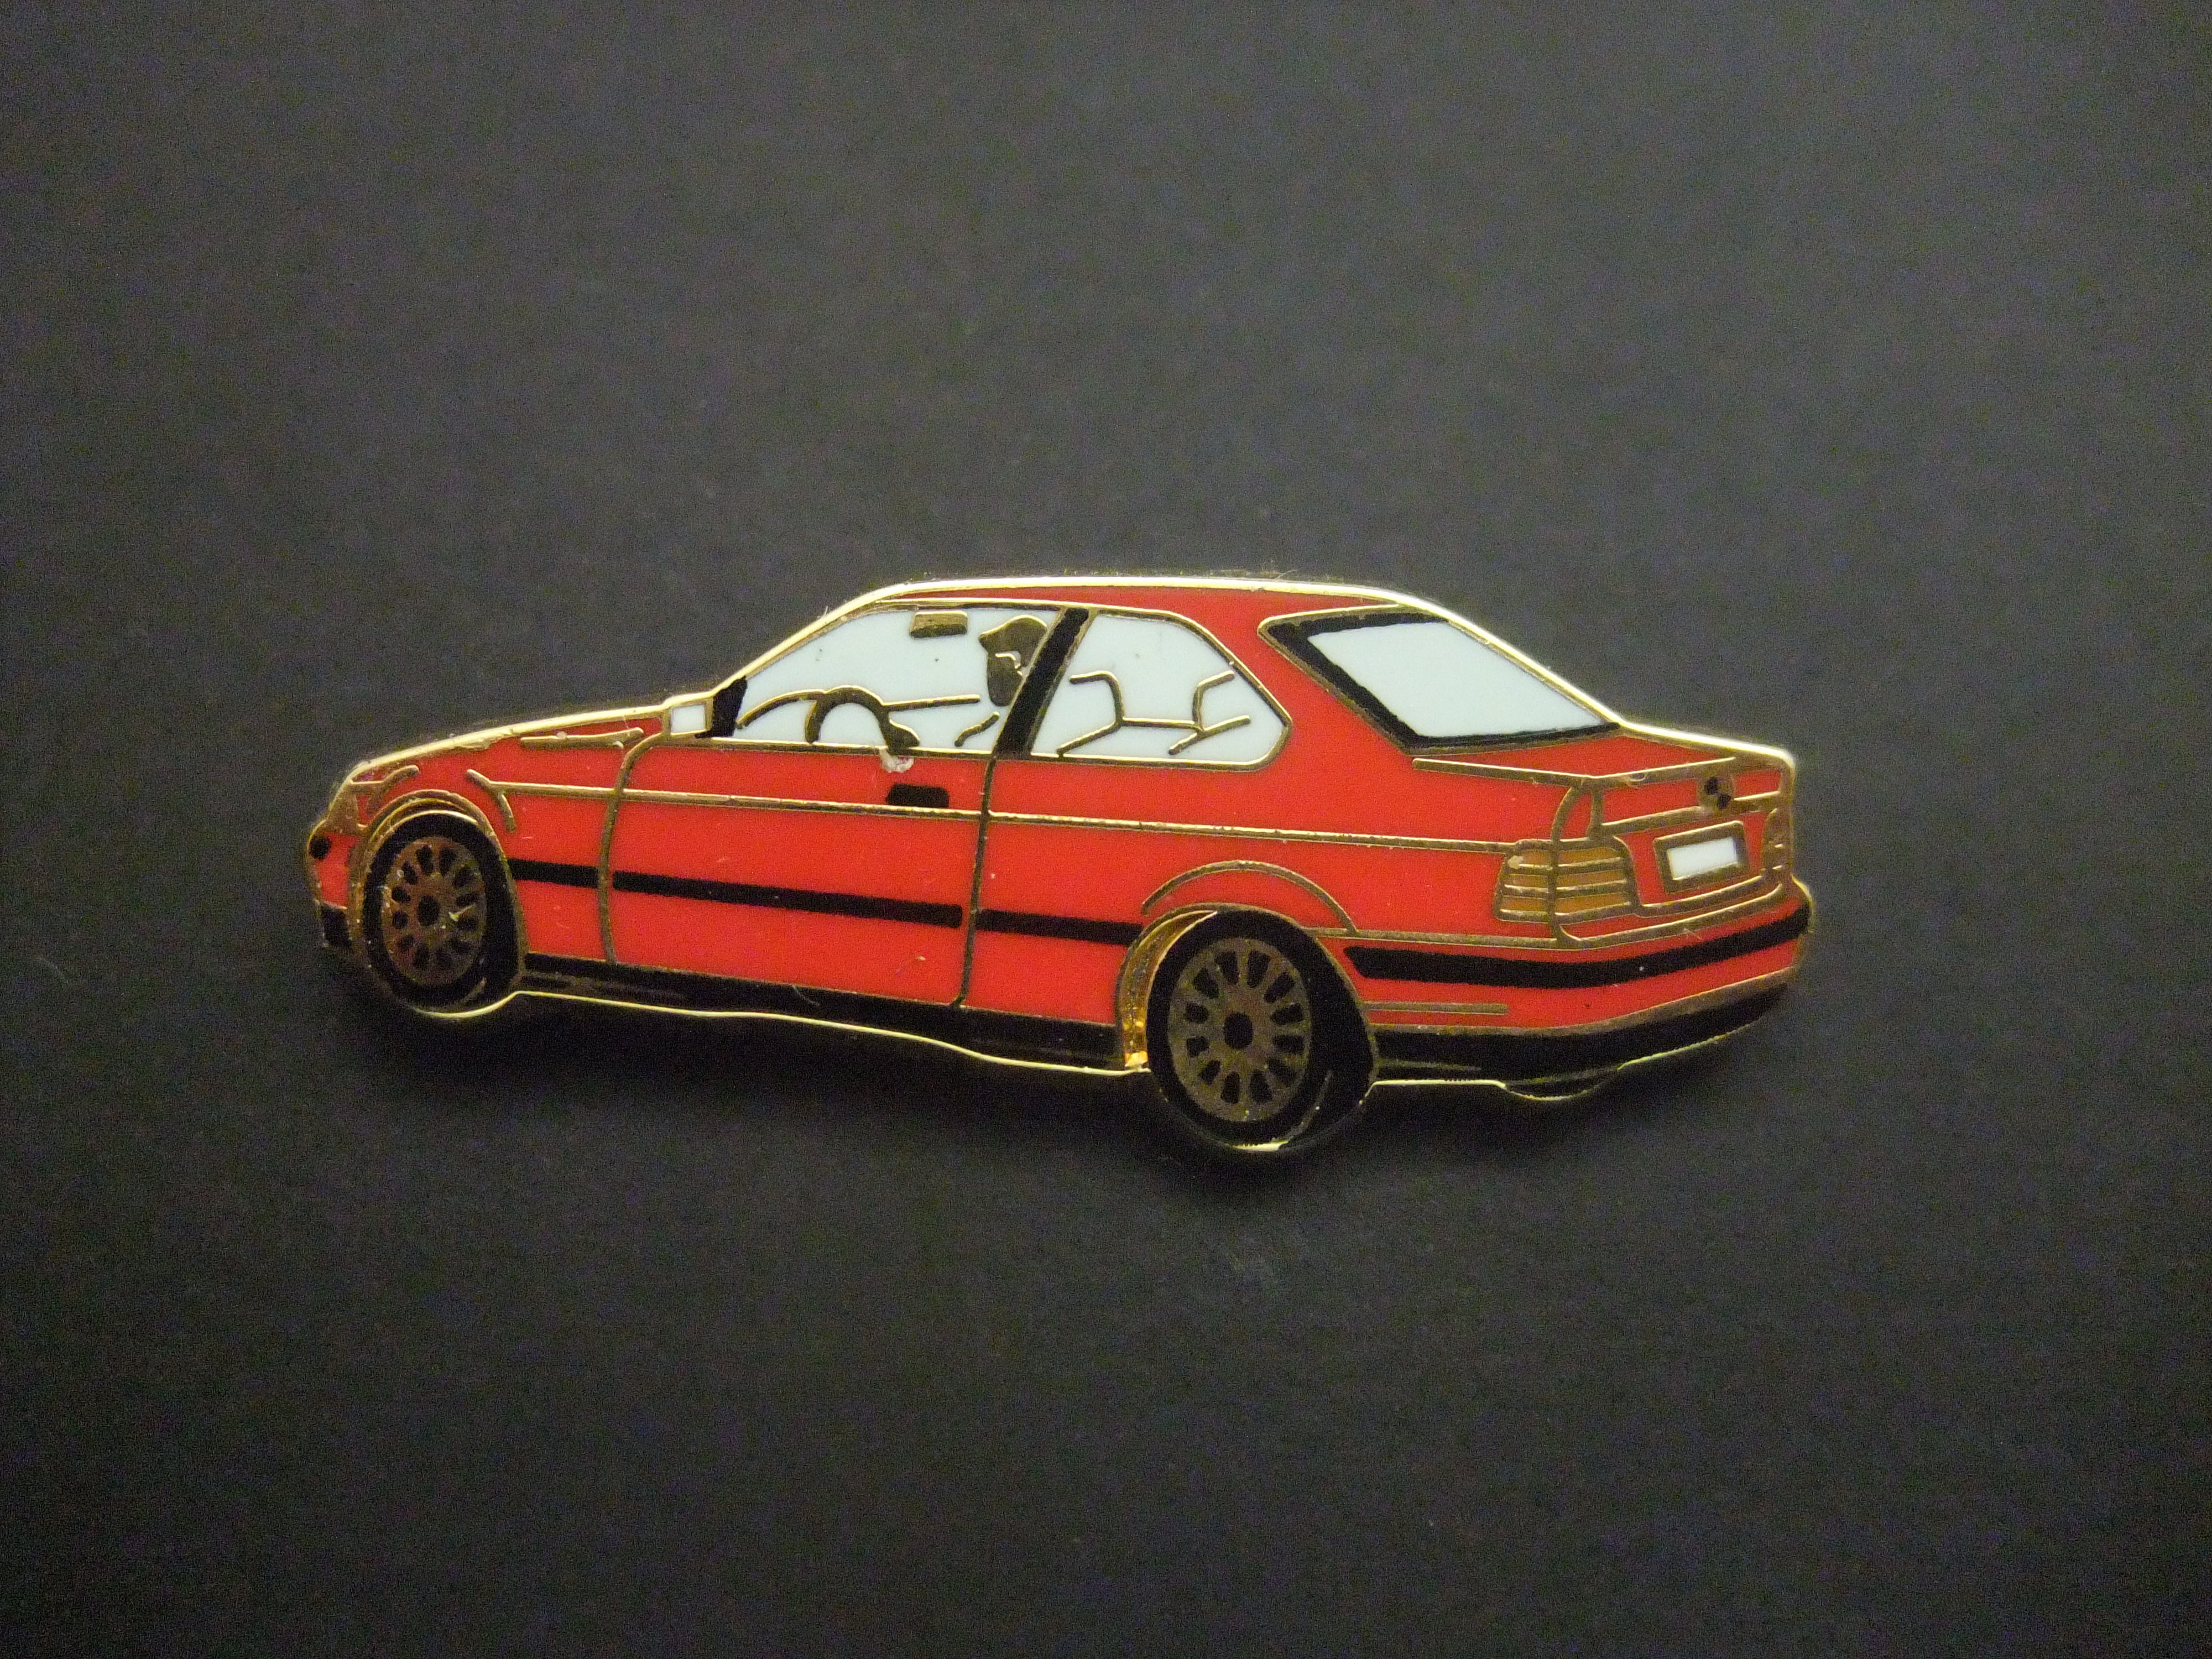 BMW 333i rood model